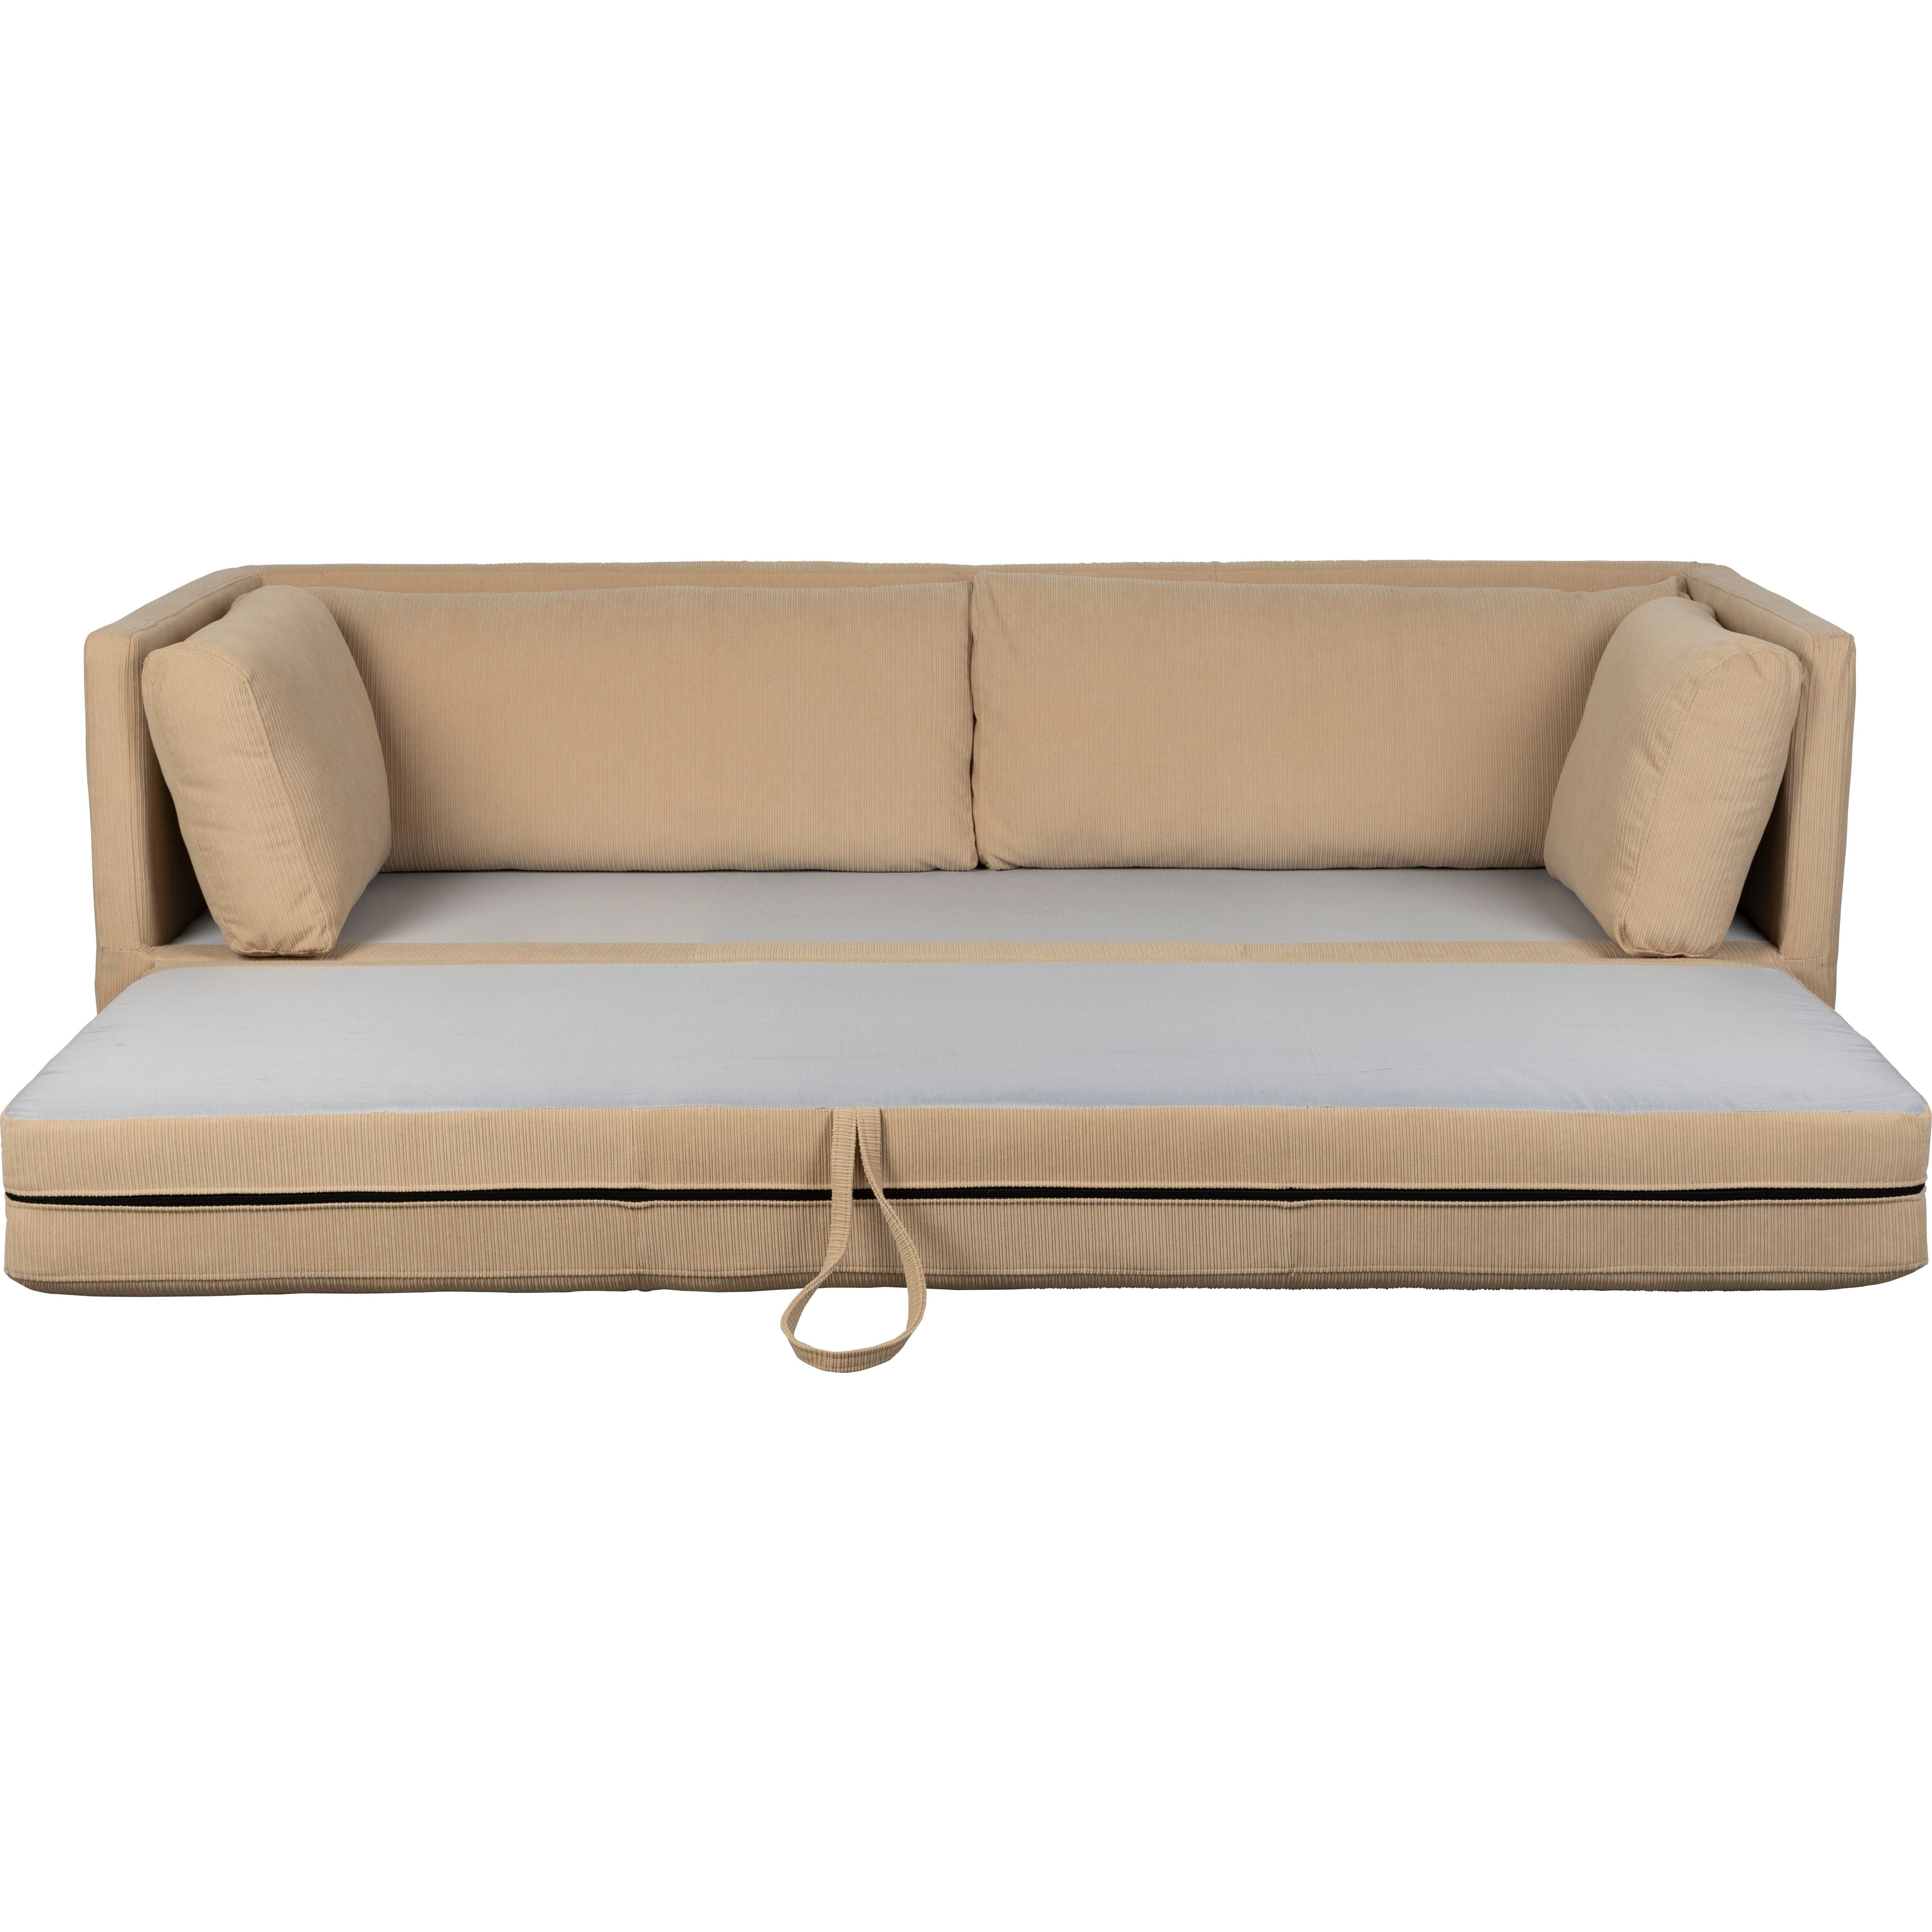 Sofa bed norah beige